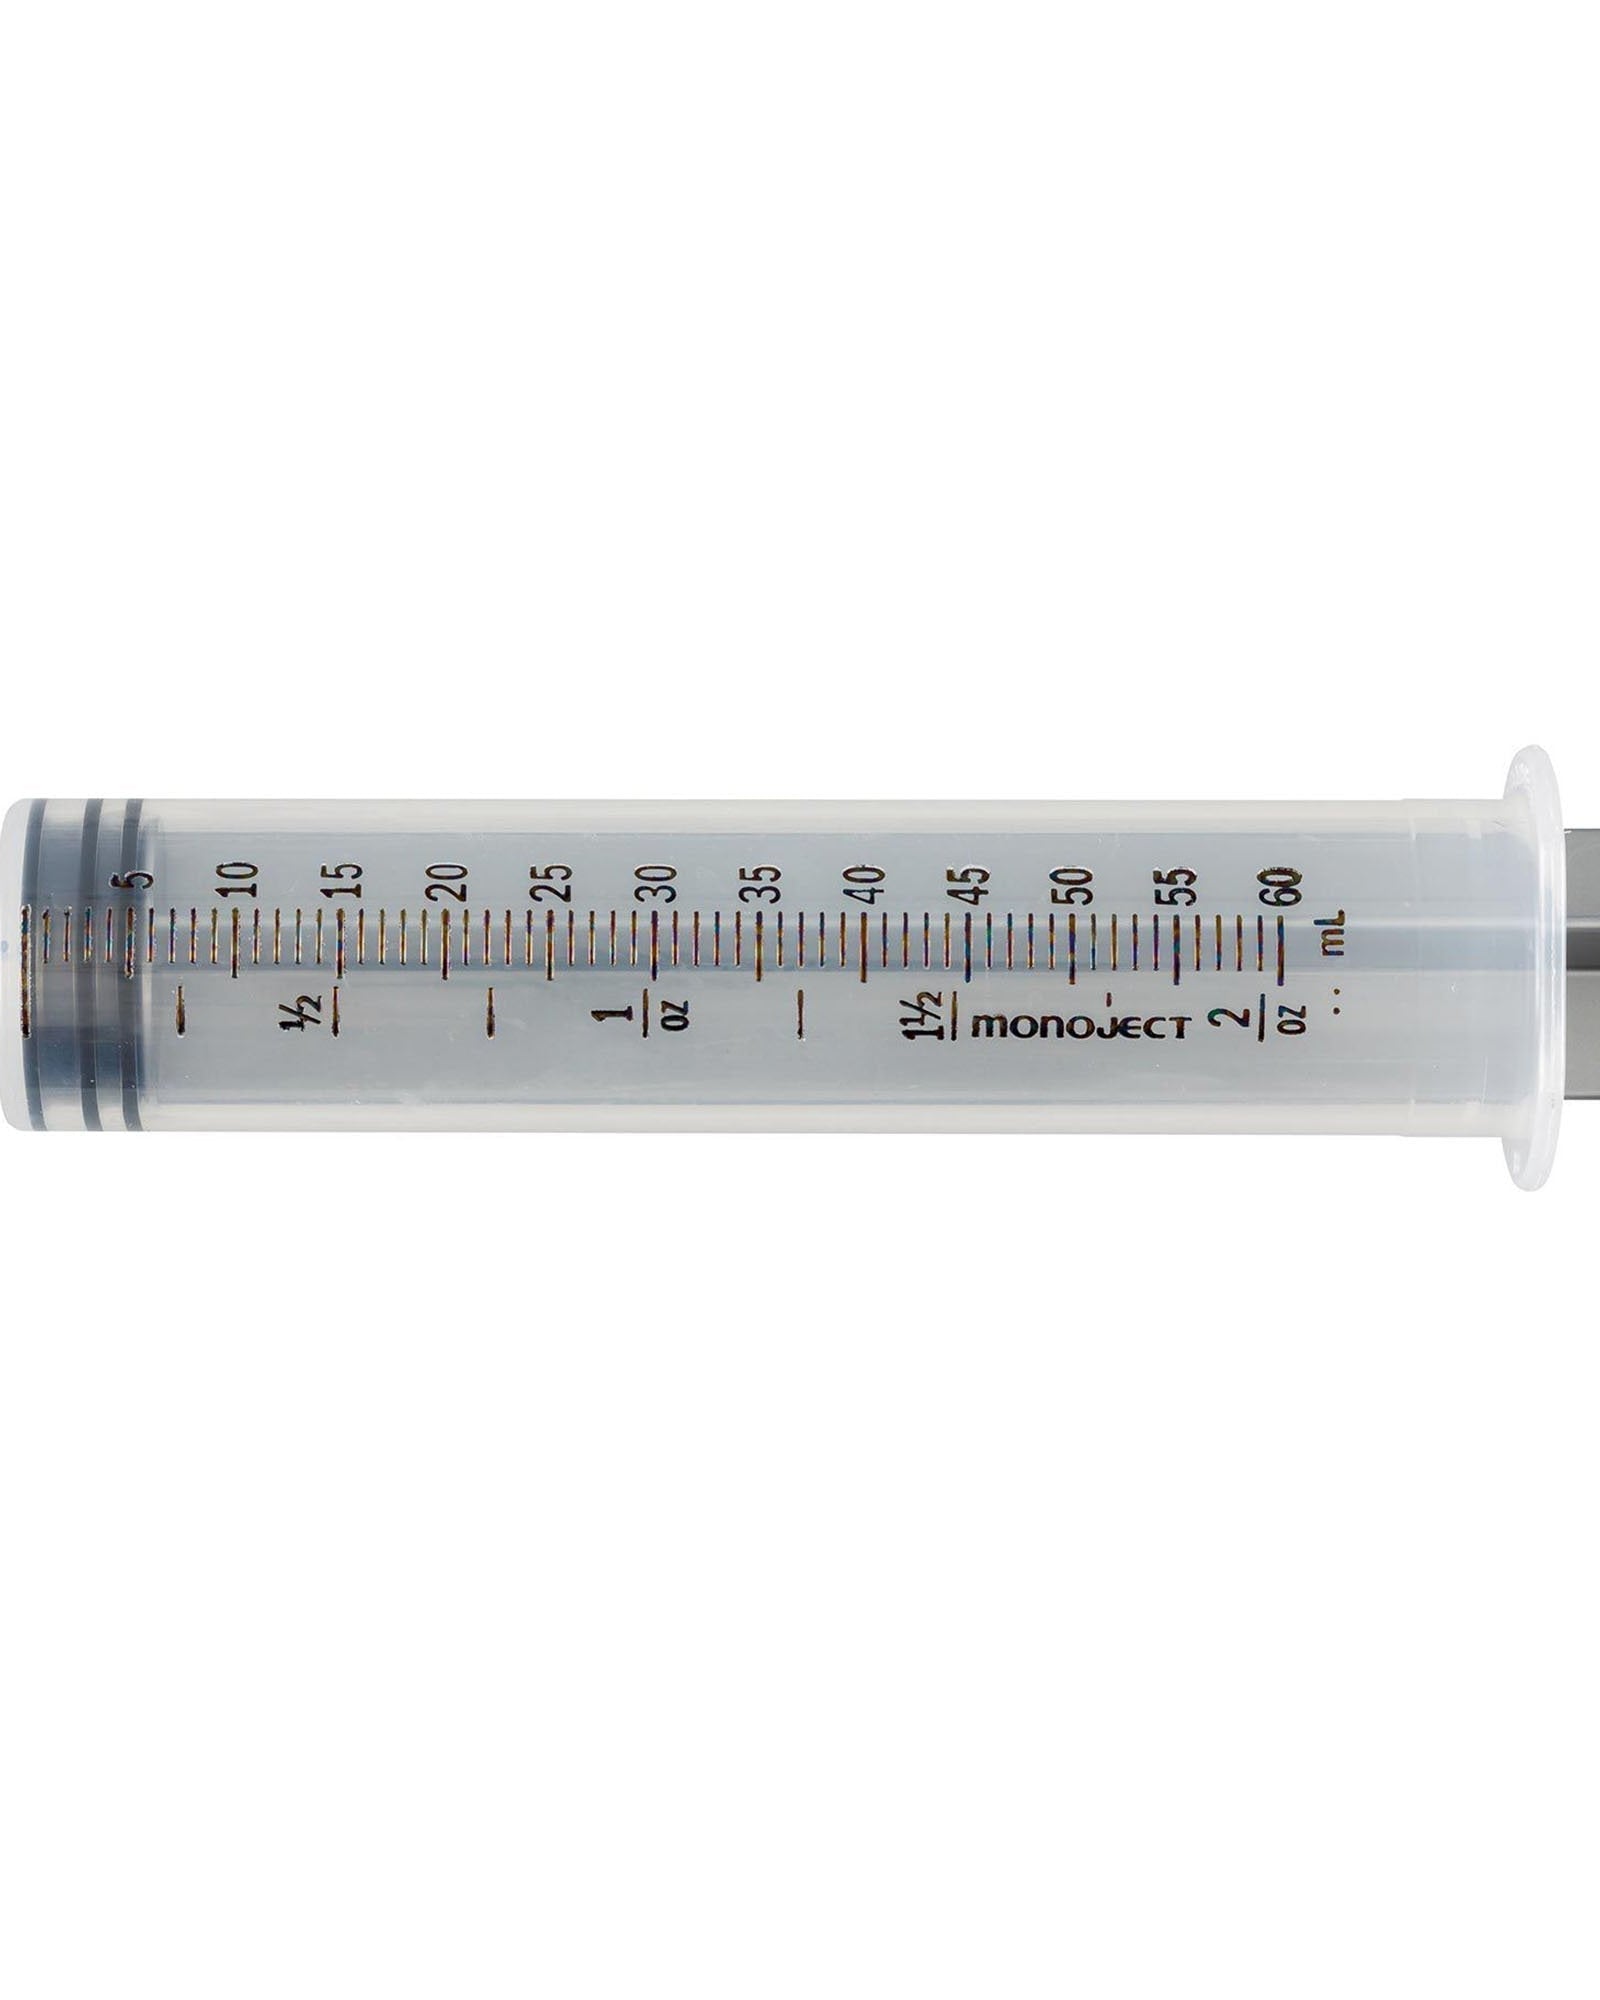 Syringe | 60 cc | Epoxy Application | Individually Wrapped | Medical Syringes | Hamilton Lee Supply